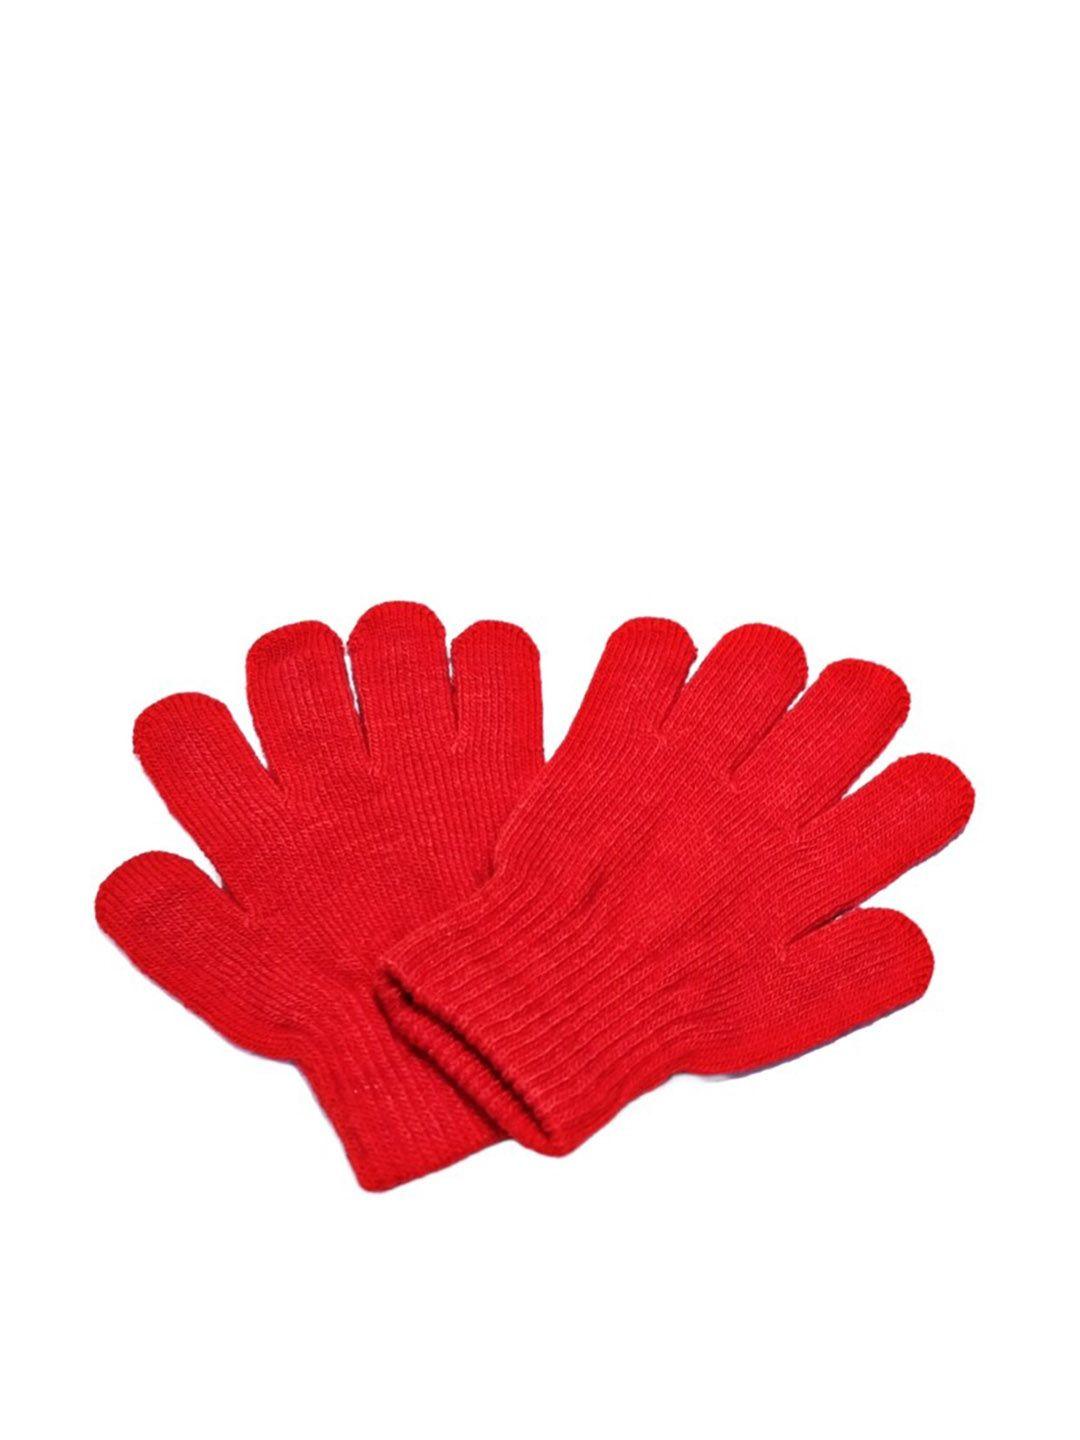 TIPY TIPY TAP Girls Full Finger Woolen Winter Gloves